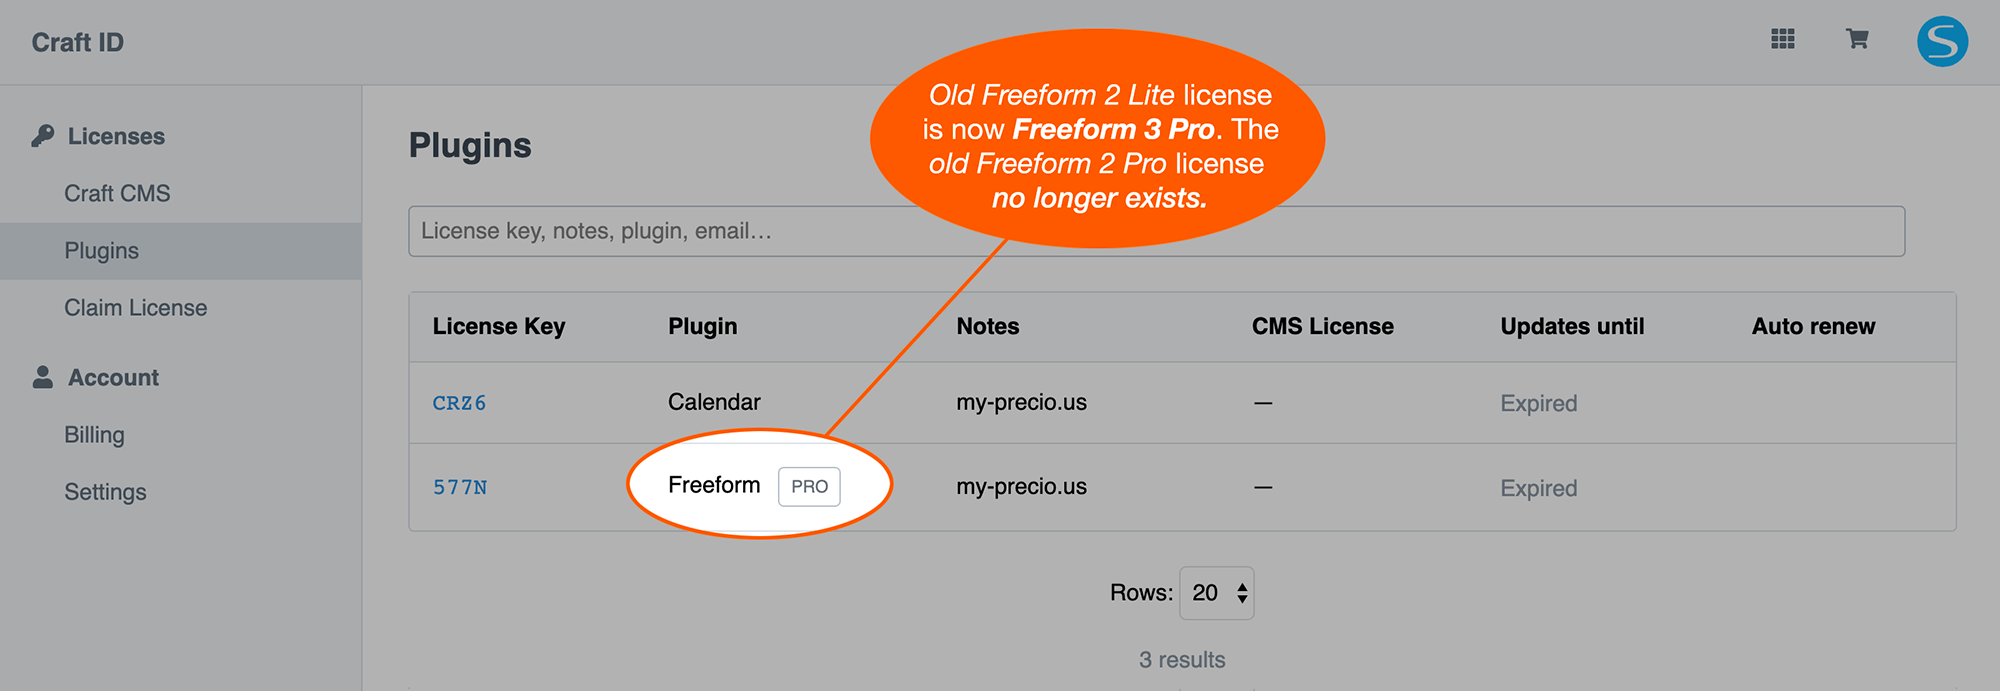 Renew the new Freeform 3 Pro license